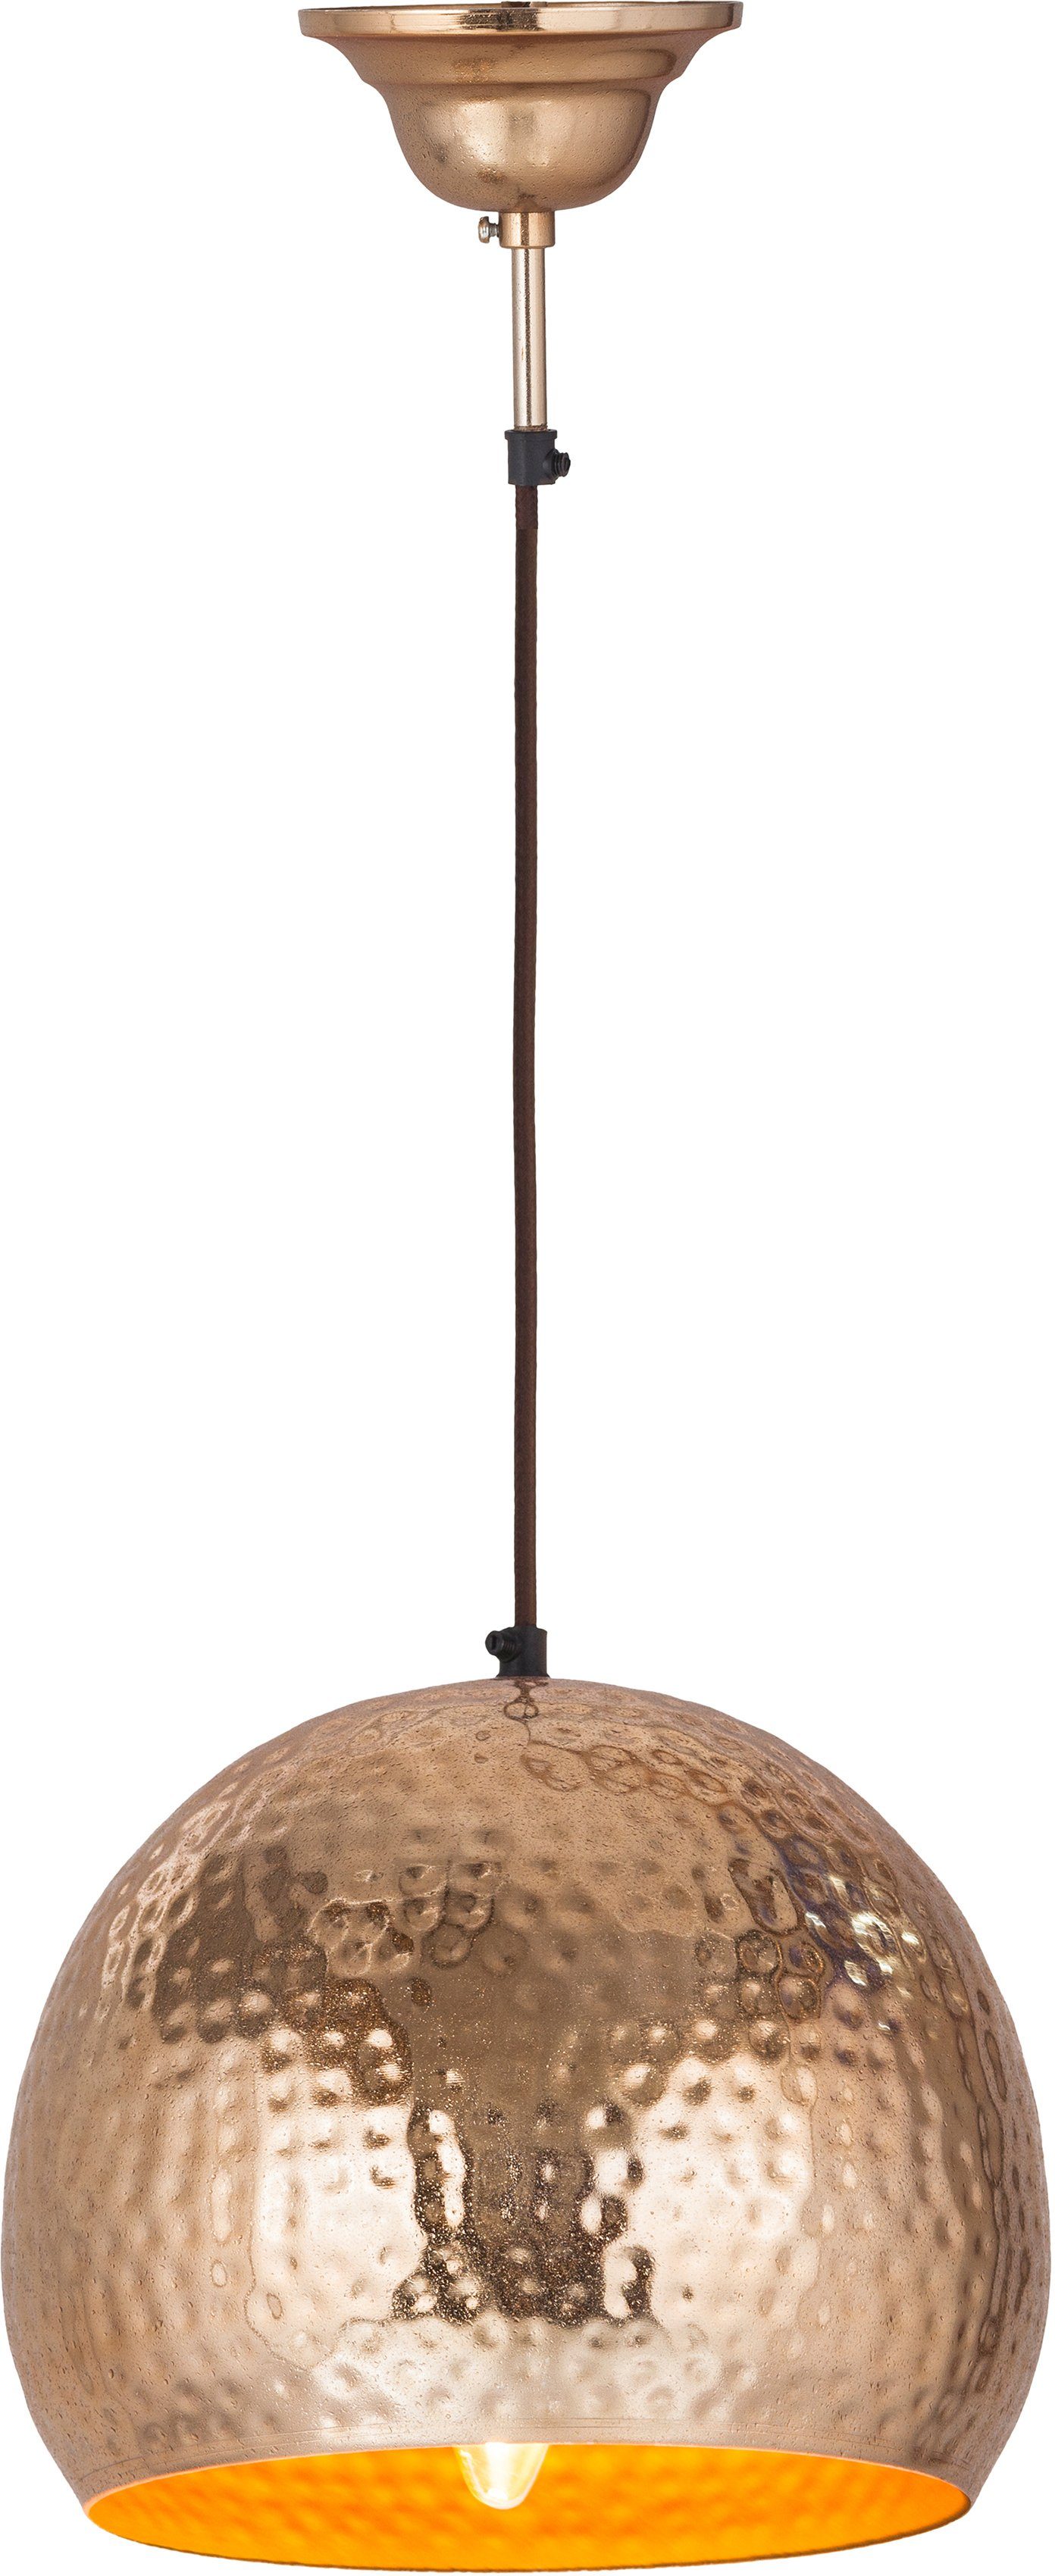 Kayoom Hängeleuchte Fabricia, ohne Leuchtmittel, Metall-Hängeleuchte im Industrial-Style, handgefertigt in Glockenform